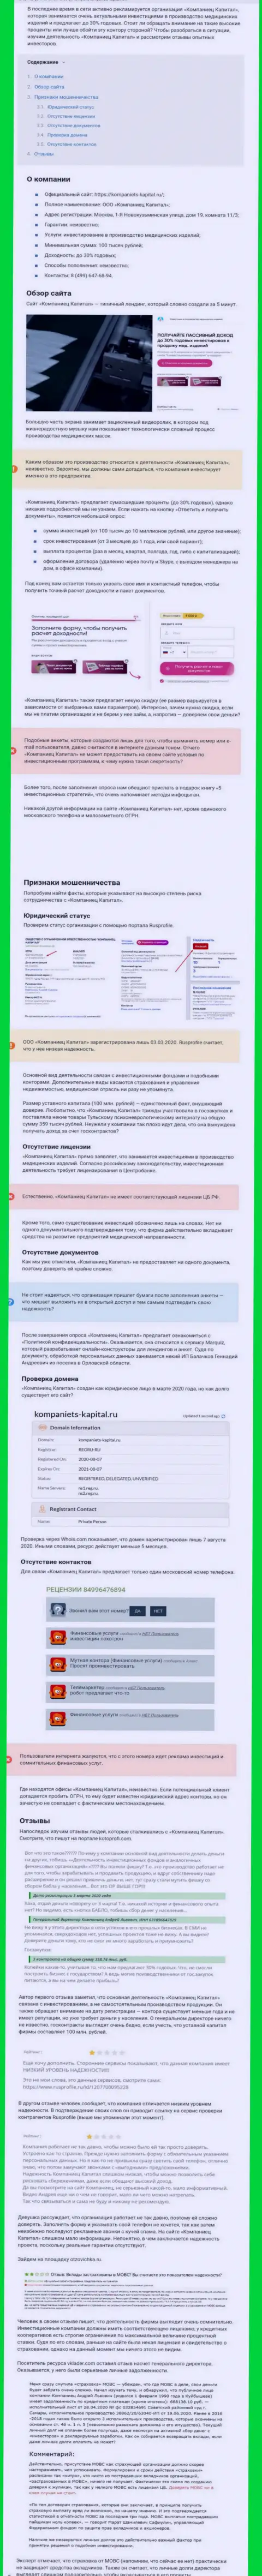 В сети не очень положительно говорят о Kompaniets-Capital Ru (обзор неправомерных деяний компании)